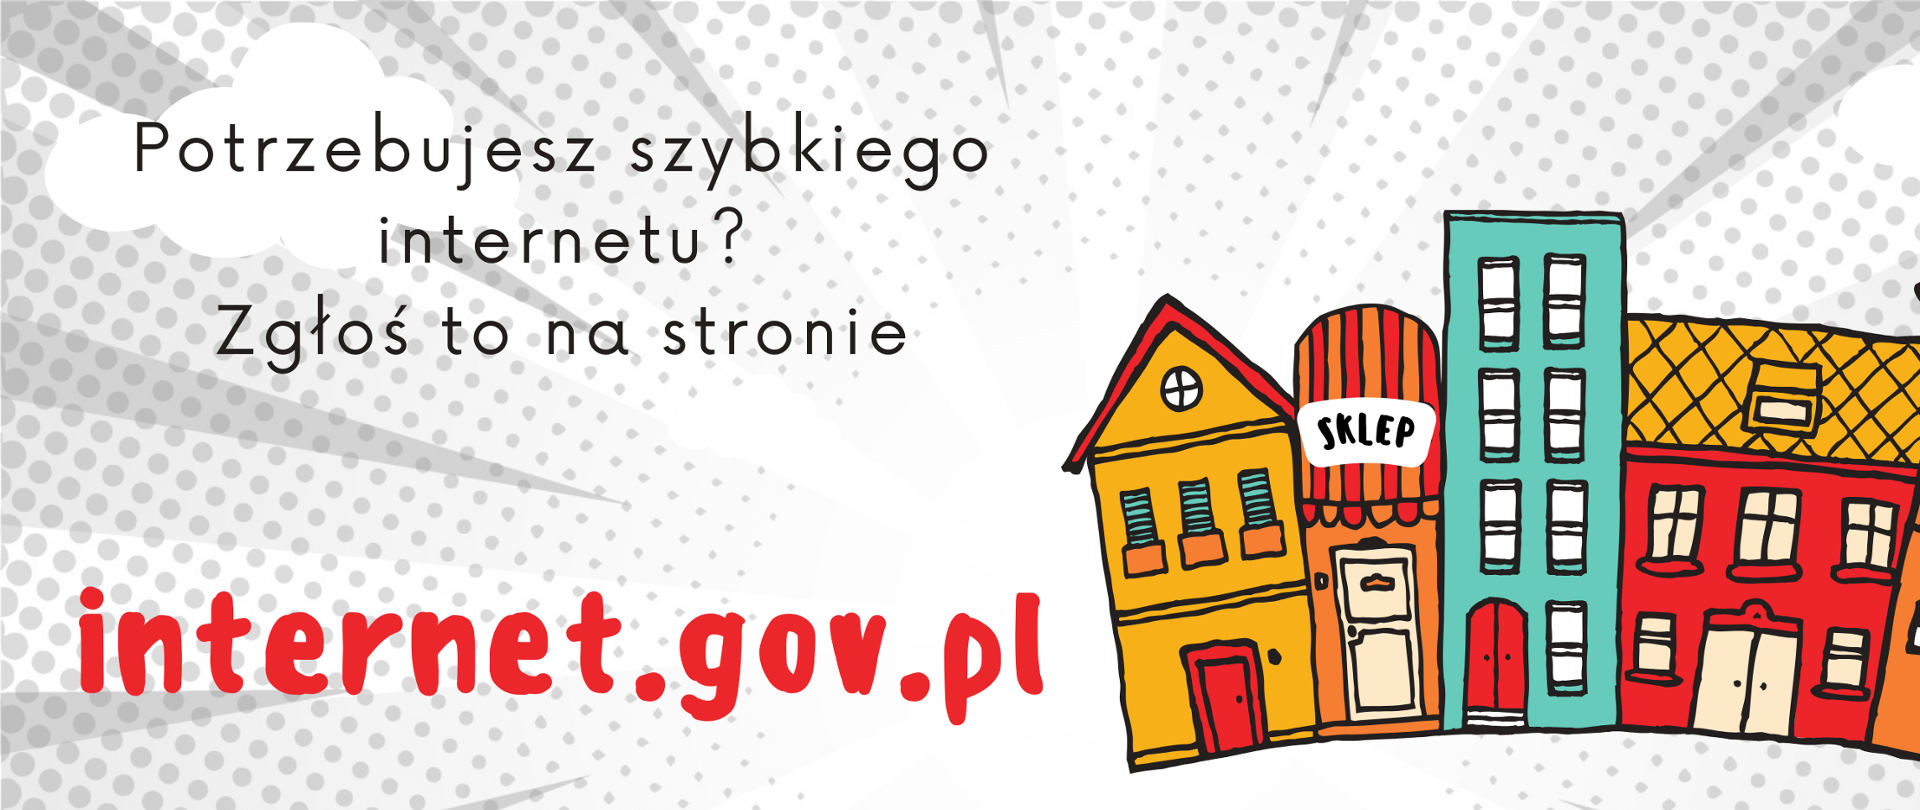 Internet.gov.pl